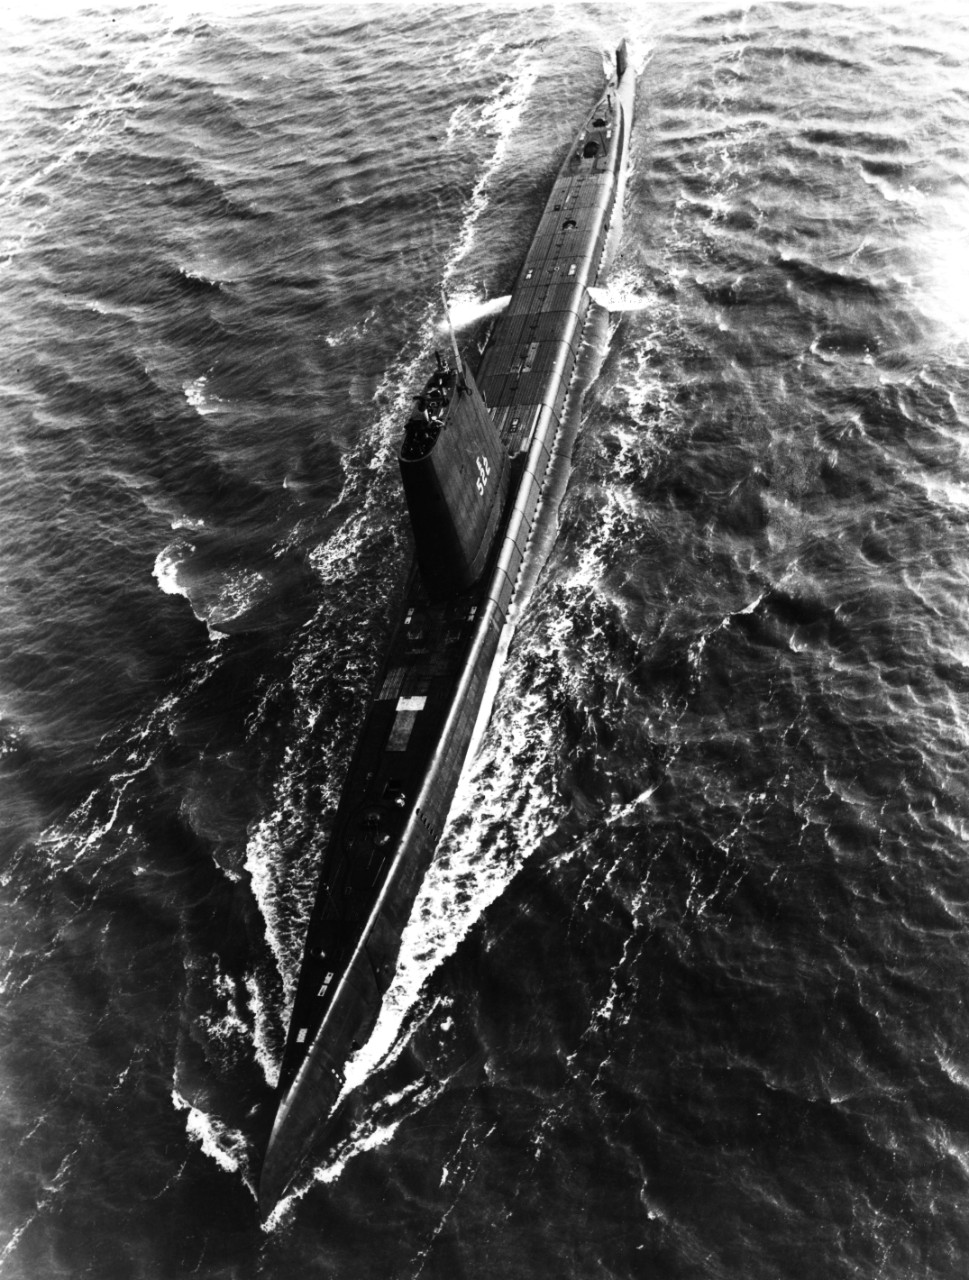 USS Amberjack (SS-522) underway in June 1965